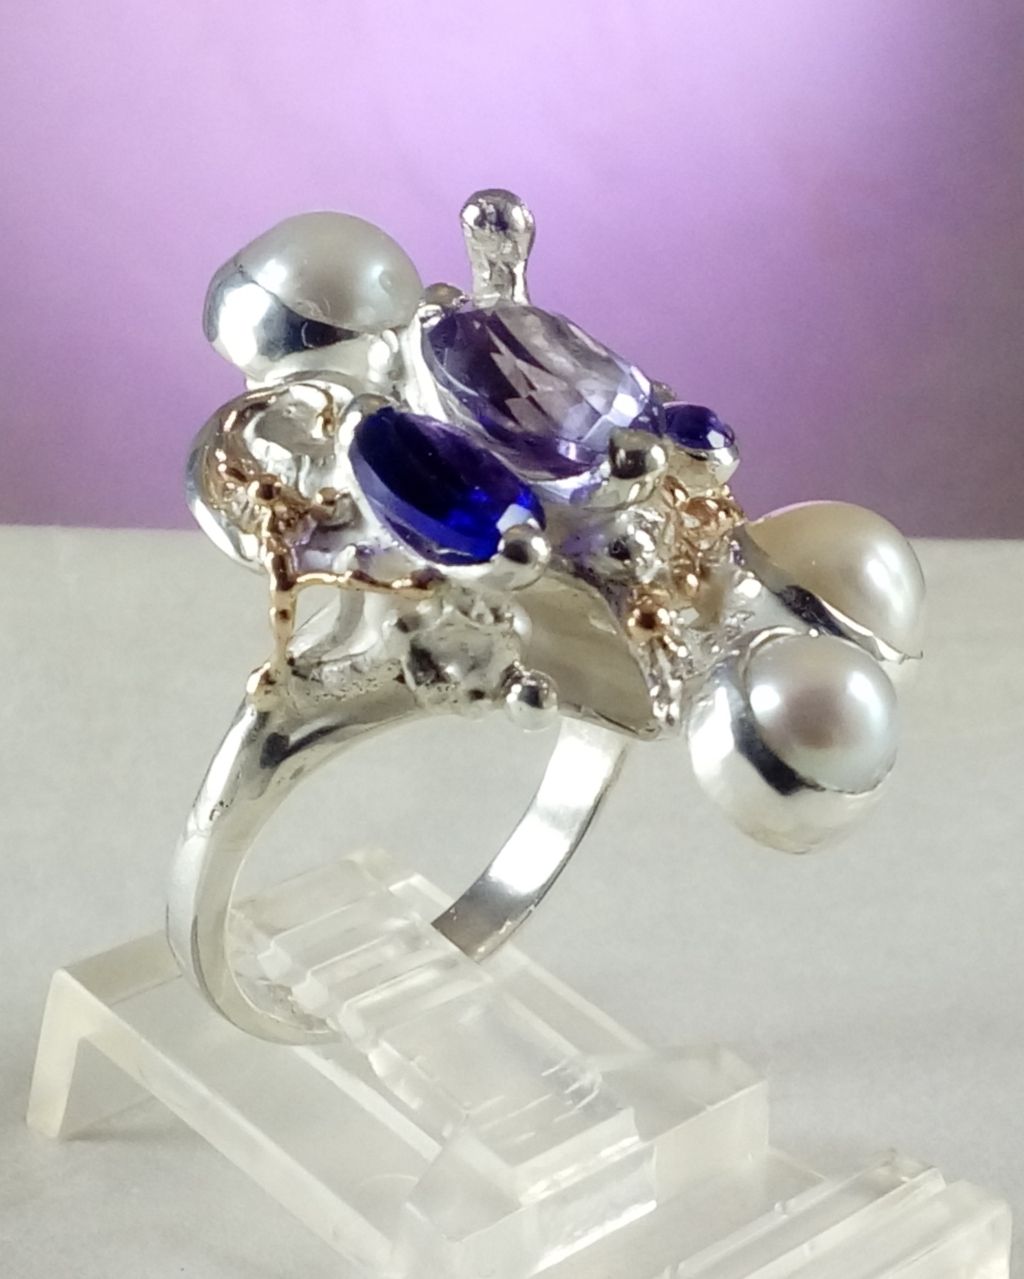 gregory pyra piro skulpturaler Ring 8070, Schmuck, der in Kunstgalerien verkauft wird, Schmuck, der in Handwerksgalerien verkauft wird, handgefertigter Schmuck mit Amethyst, handgefertigter Schmuck mit Perlen, Schmuck, Schmuck mit skulpturalem Design, handgefertigter Ring mit Amethyst und Perle